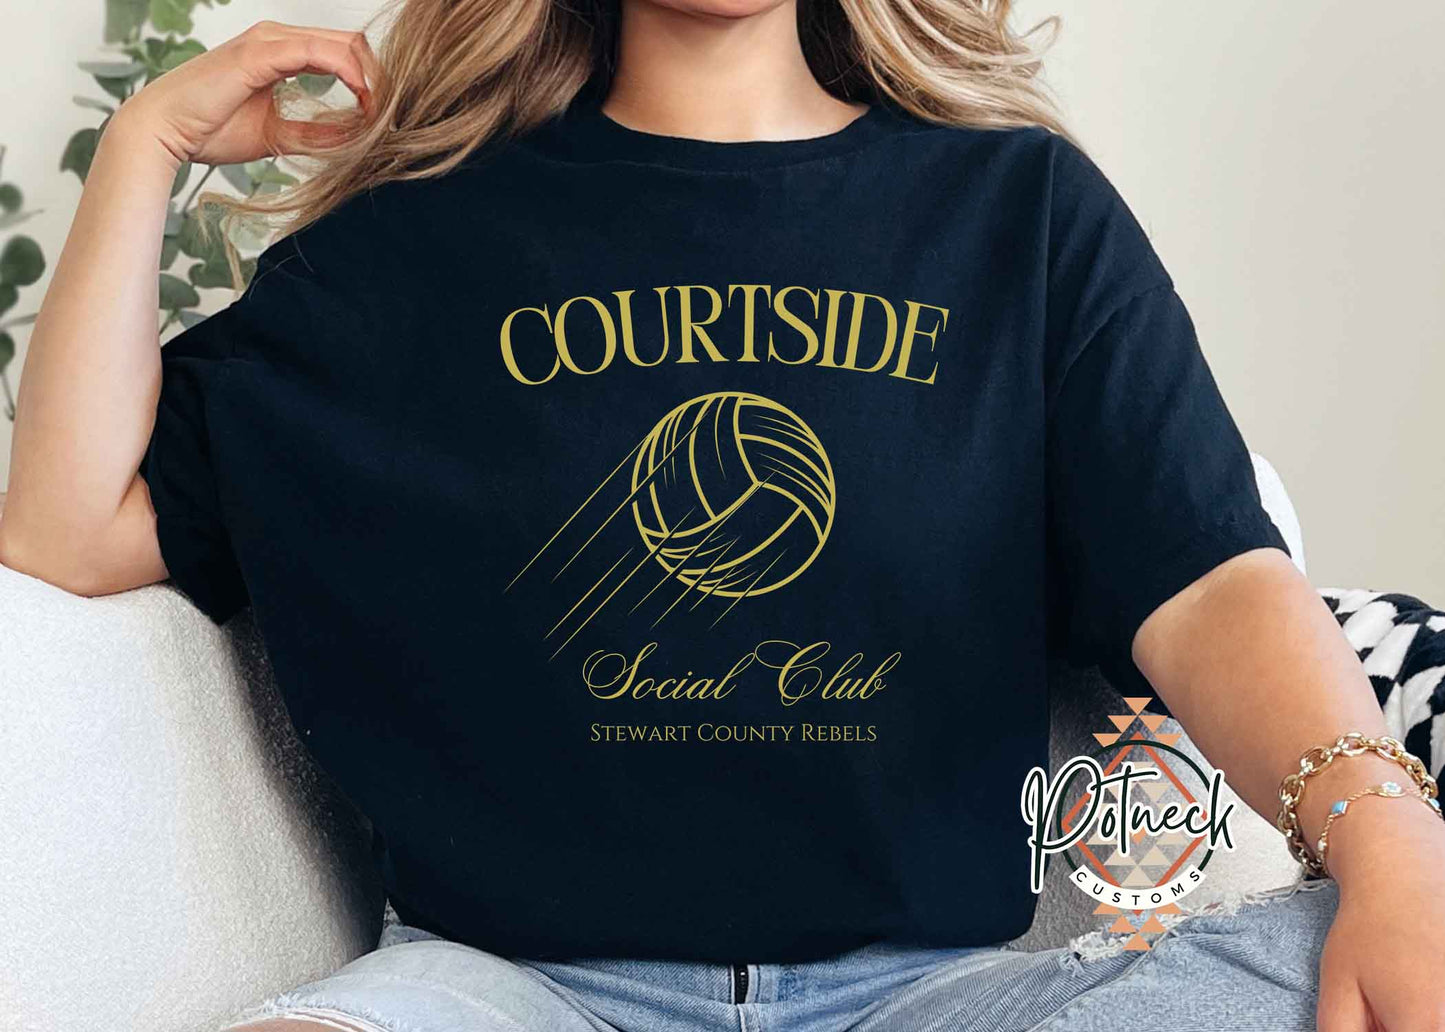 Courtside Rebels Social Club shirt